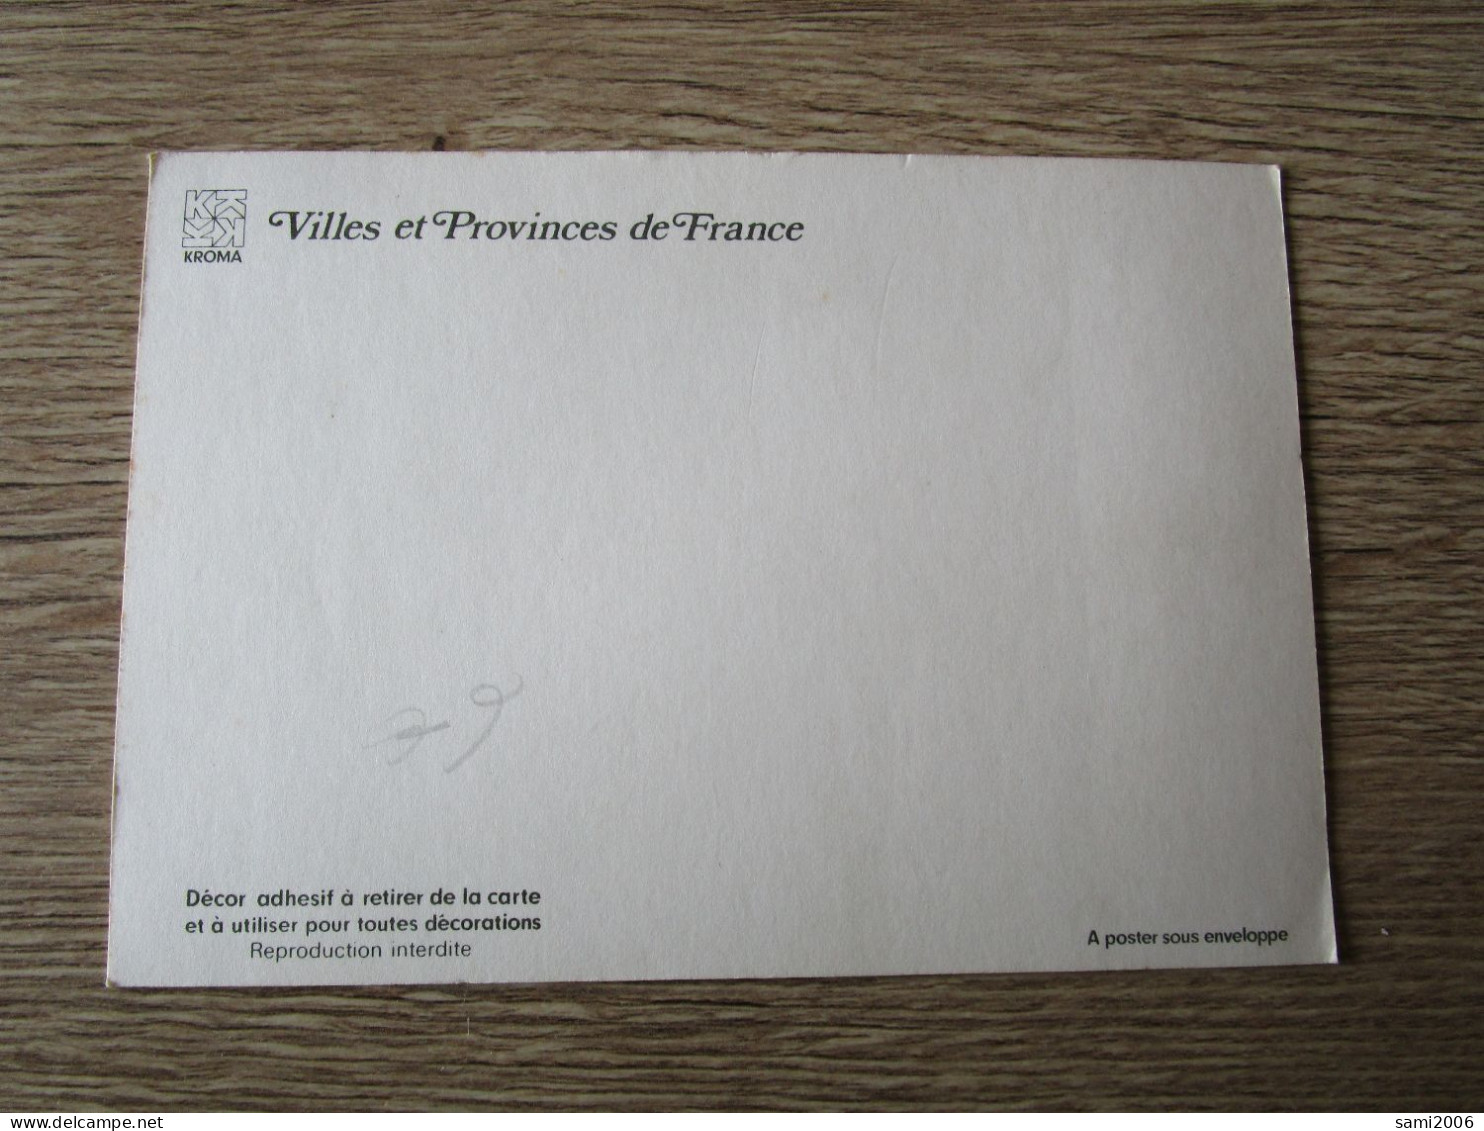 CPA BLASON ADHESIF PROVENCE VILLES ET PROVINCES DE FRANCE - Provence-Alpes-Côte D'Azur